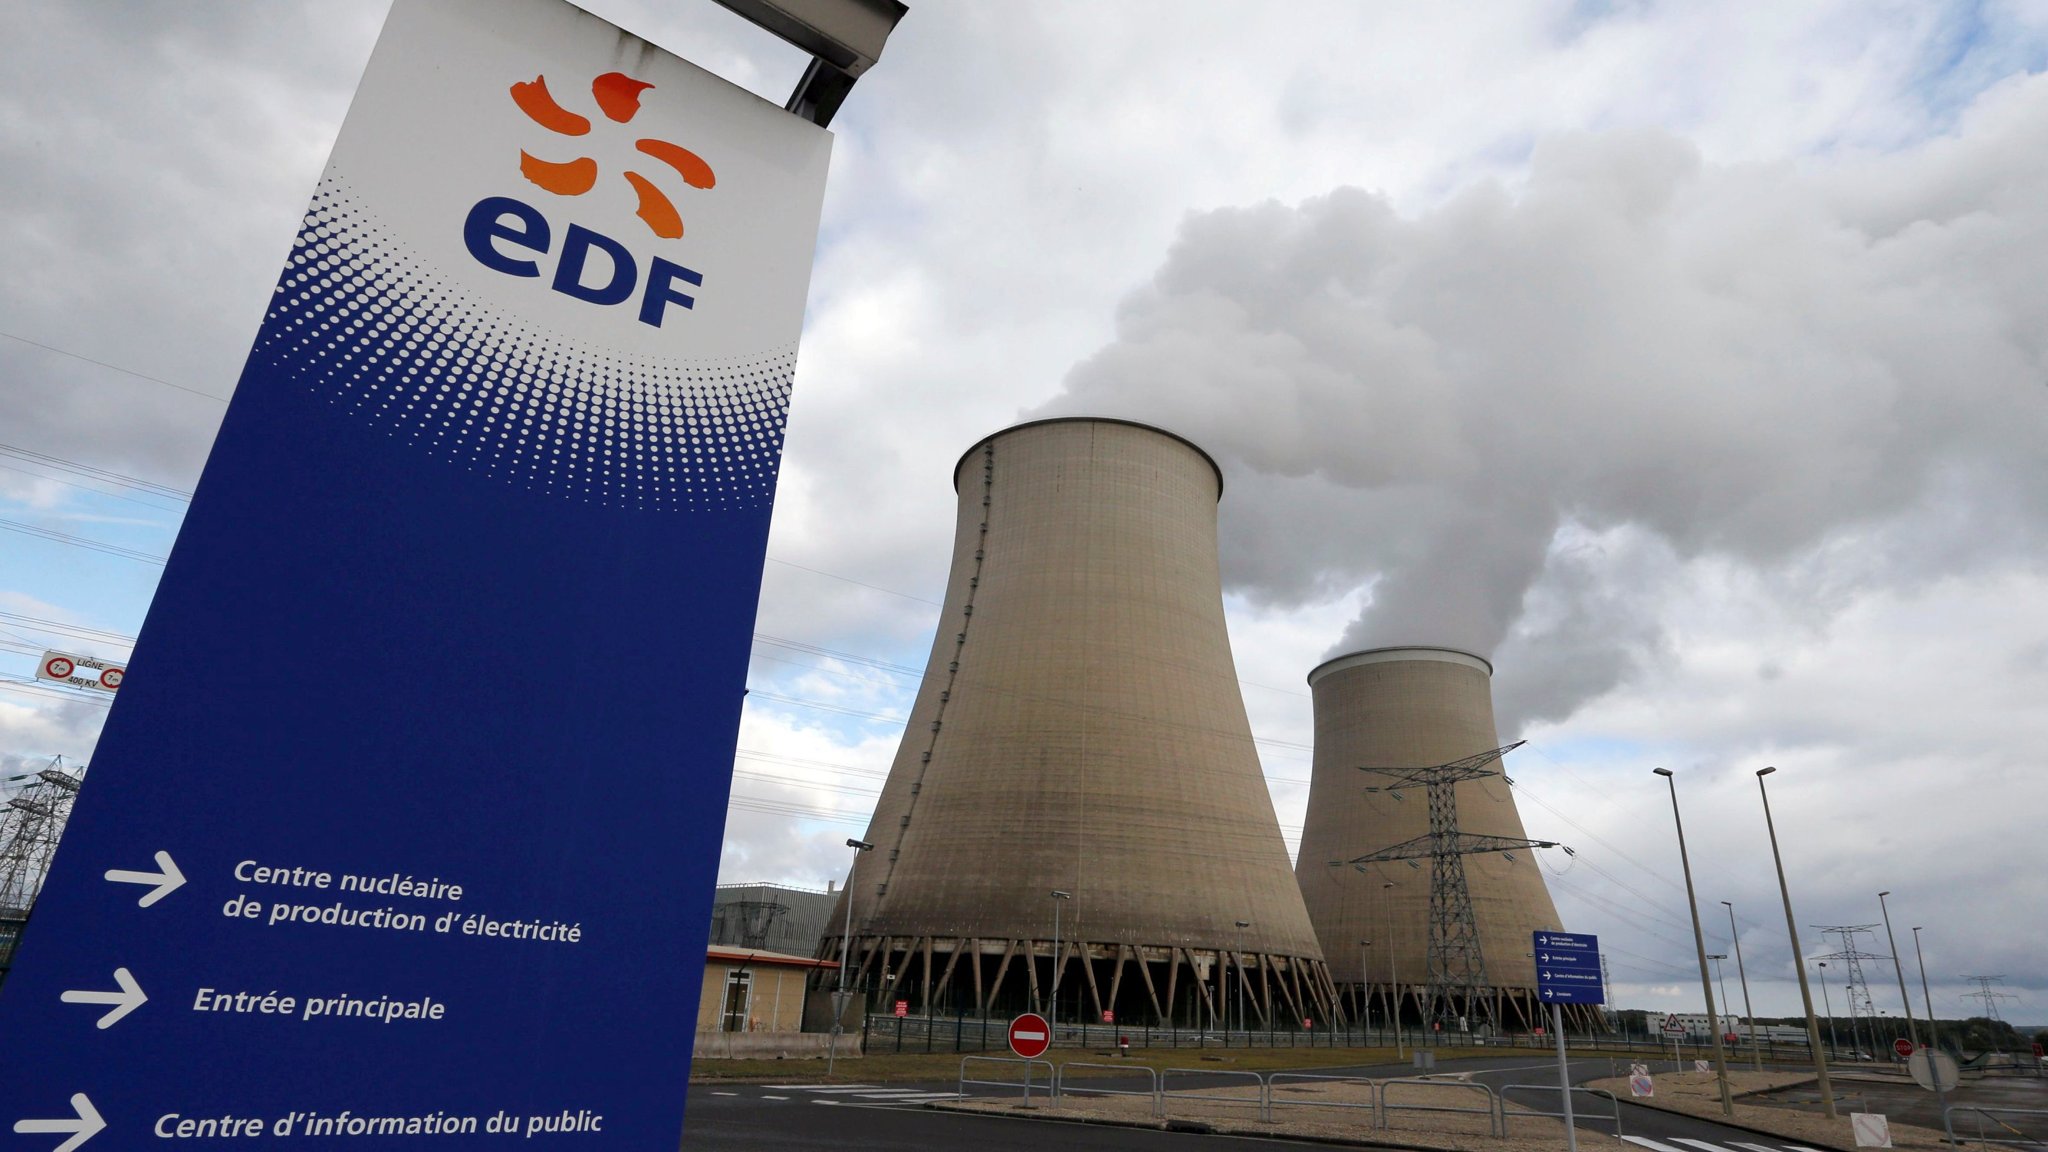 Γαλλία: Συμφωνία με την EDF για σταθερές τιμές πυρηνικής ενέργειας και μηχανισμό ανακατανομής κερδών